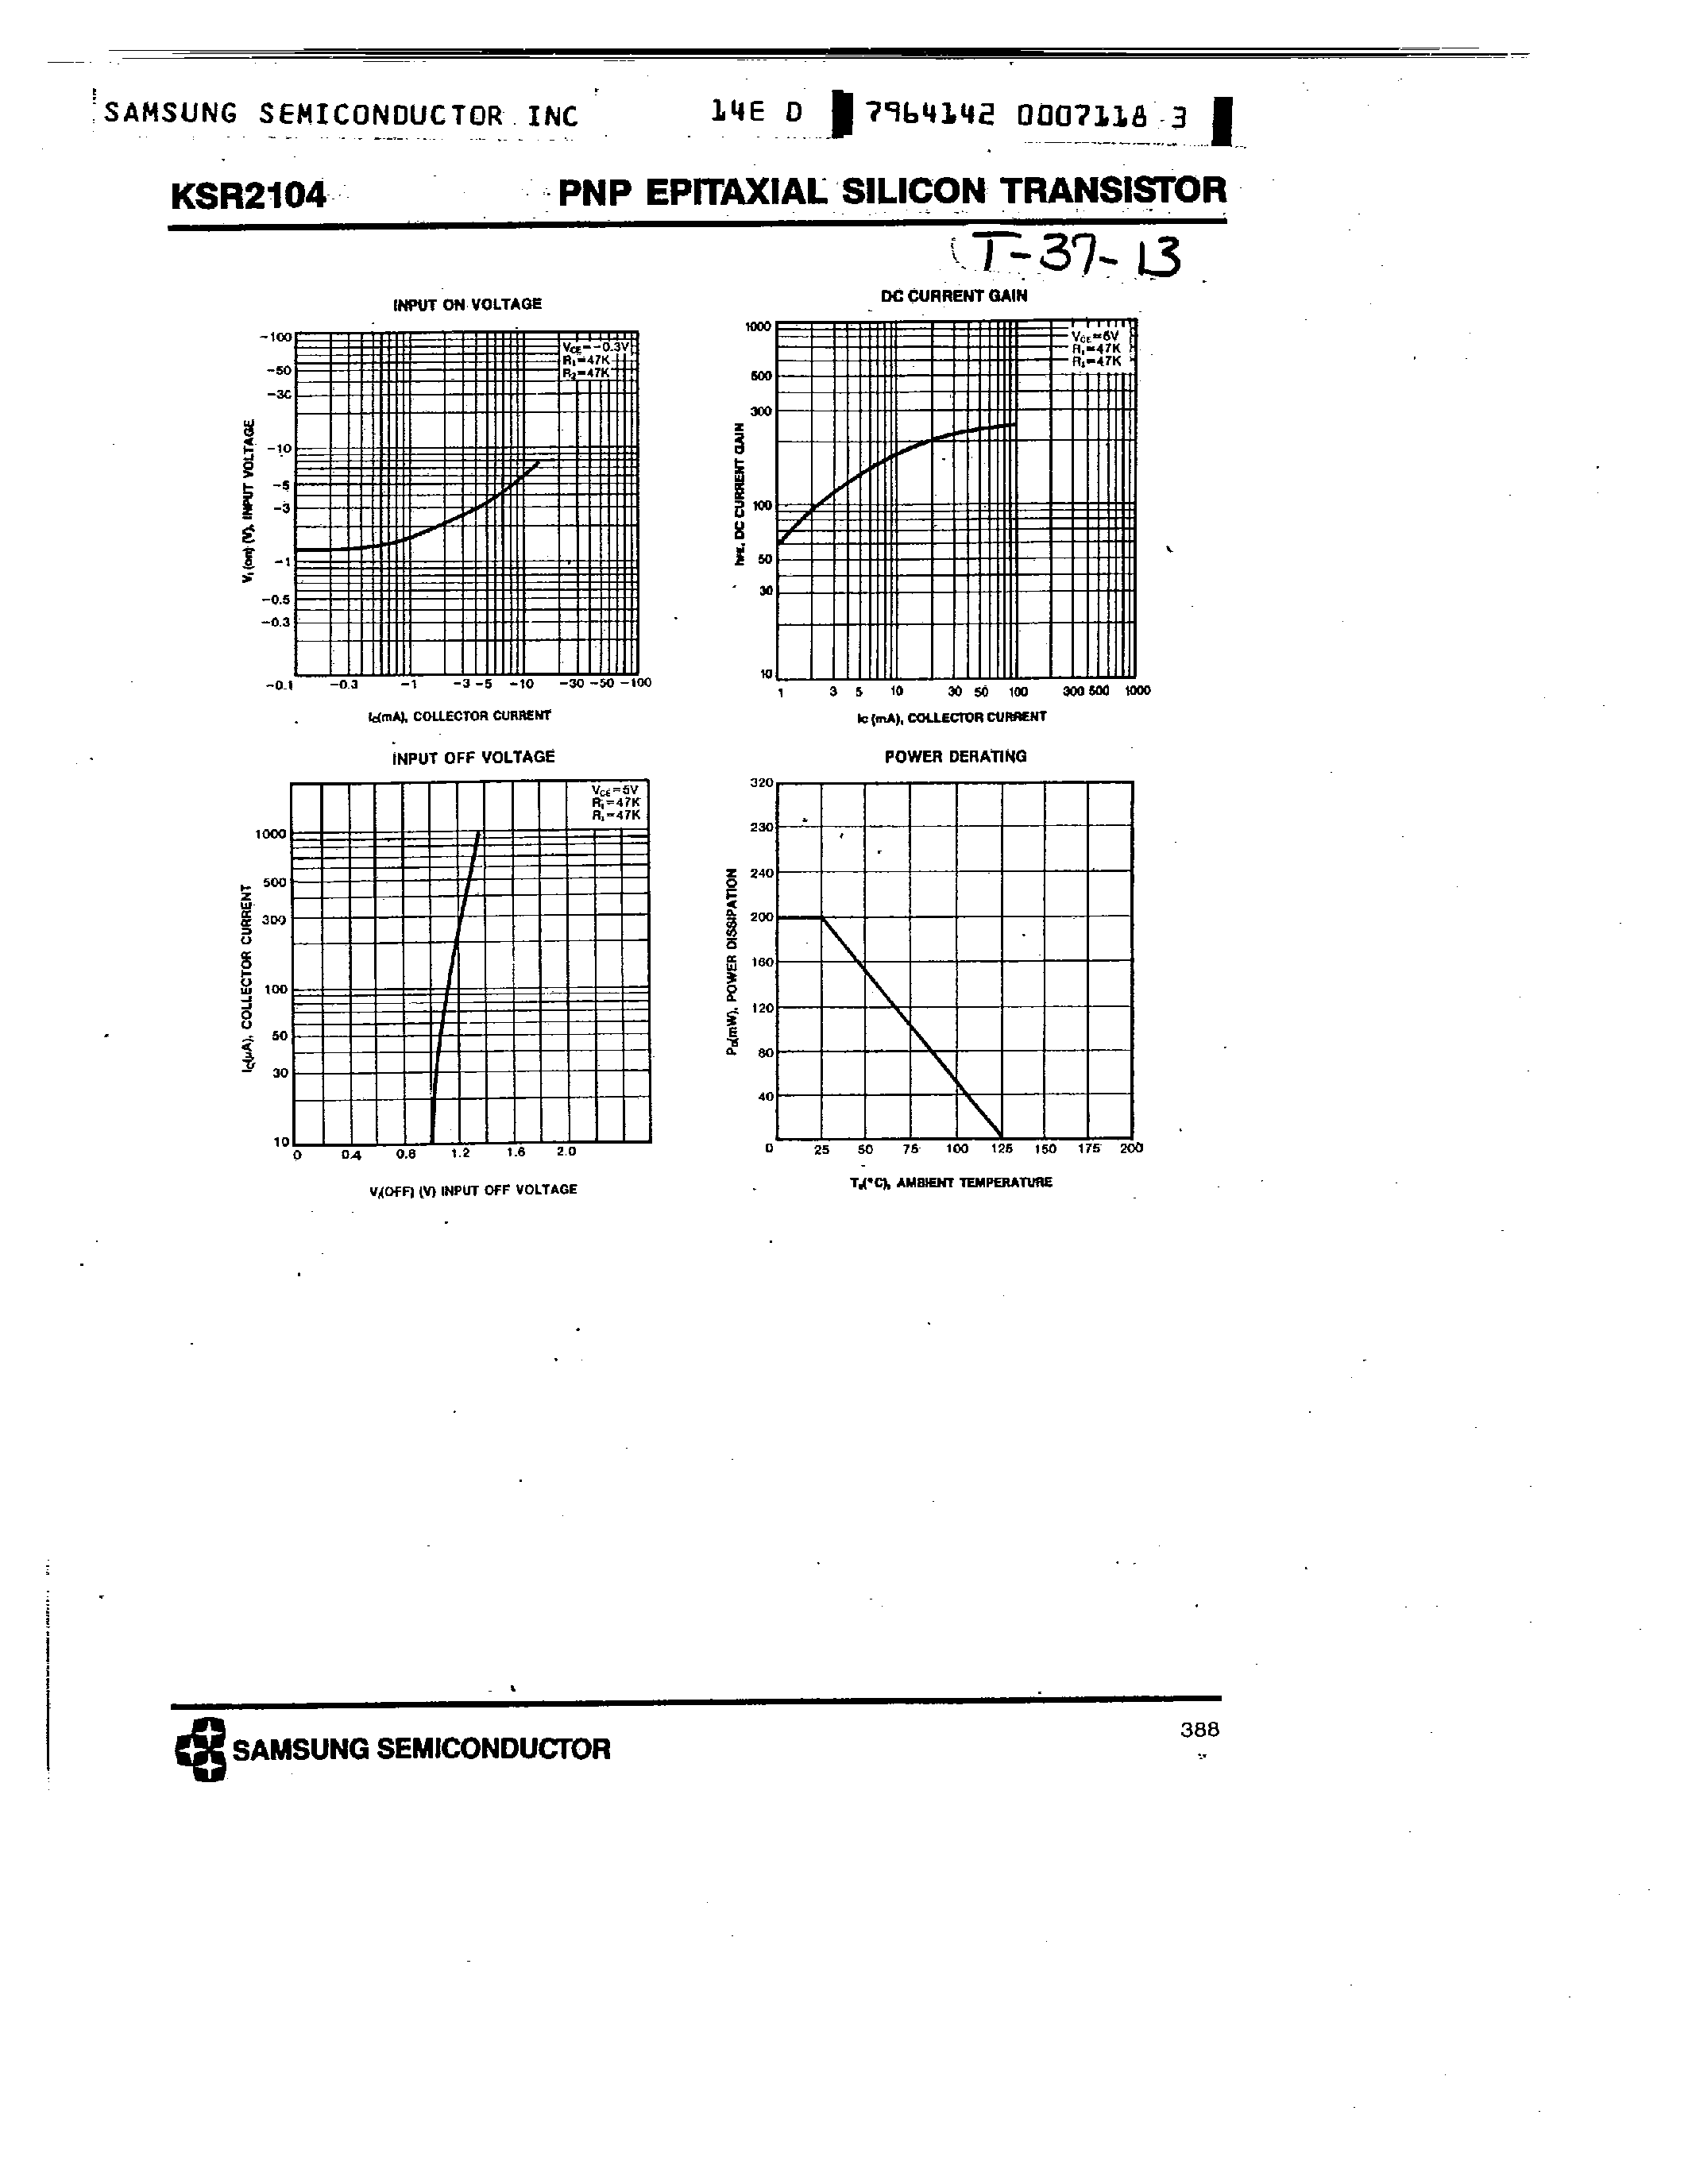 Datasheet KSR2104 - PNP (SWITCHING APPLICATION) page 2